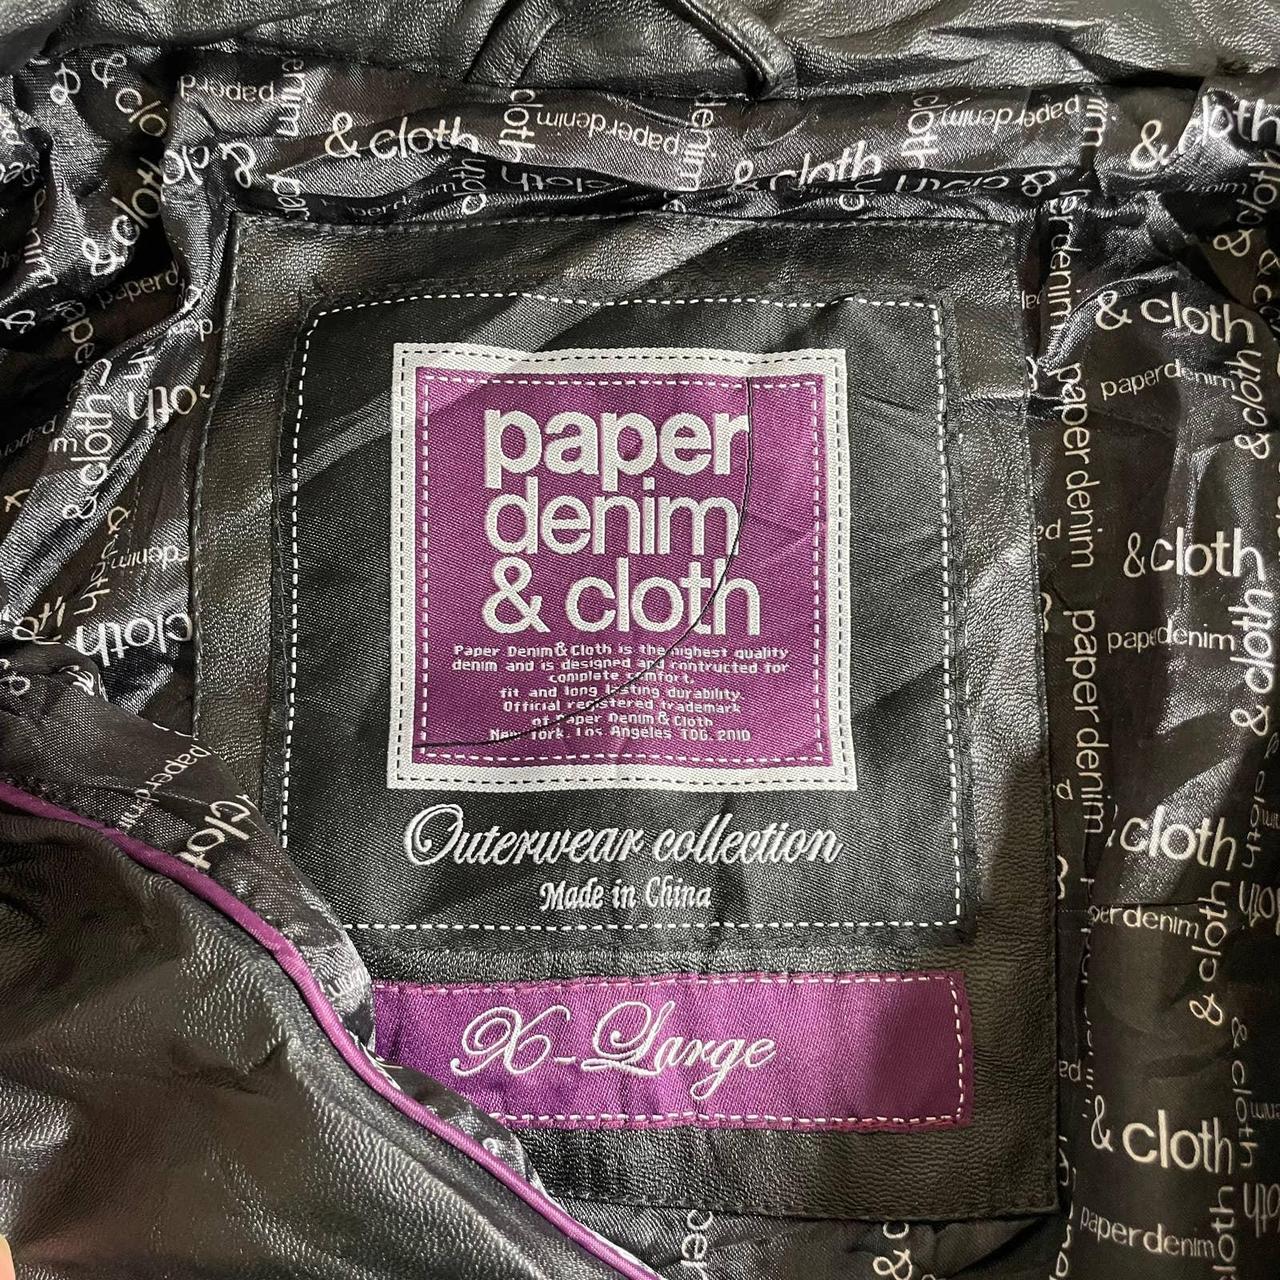 Paper denim & cloth - Gem